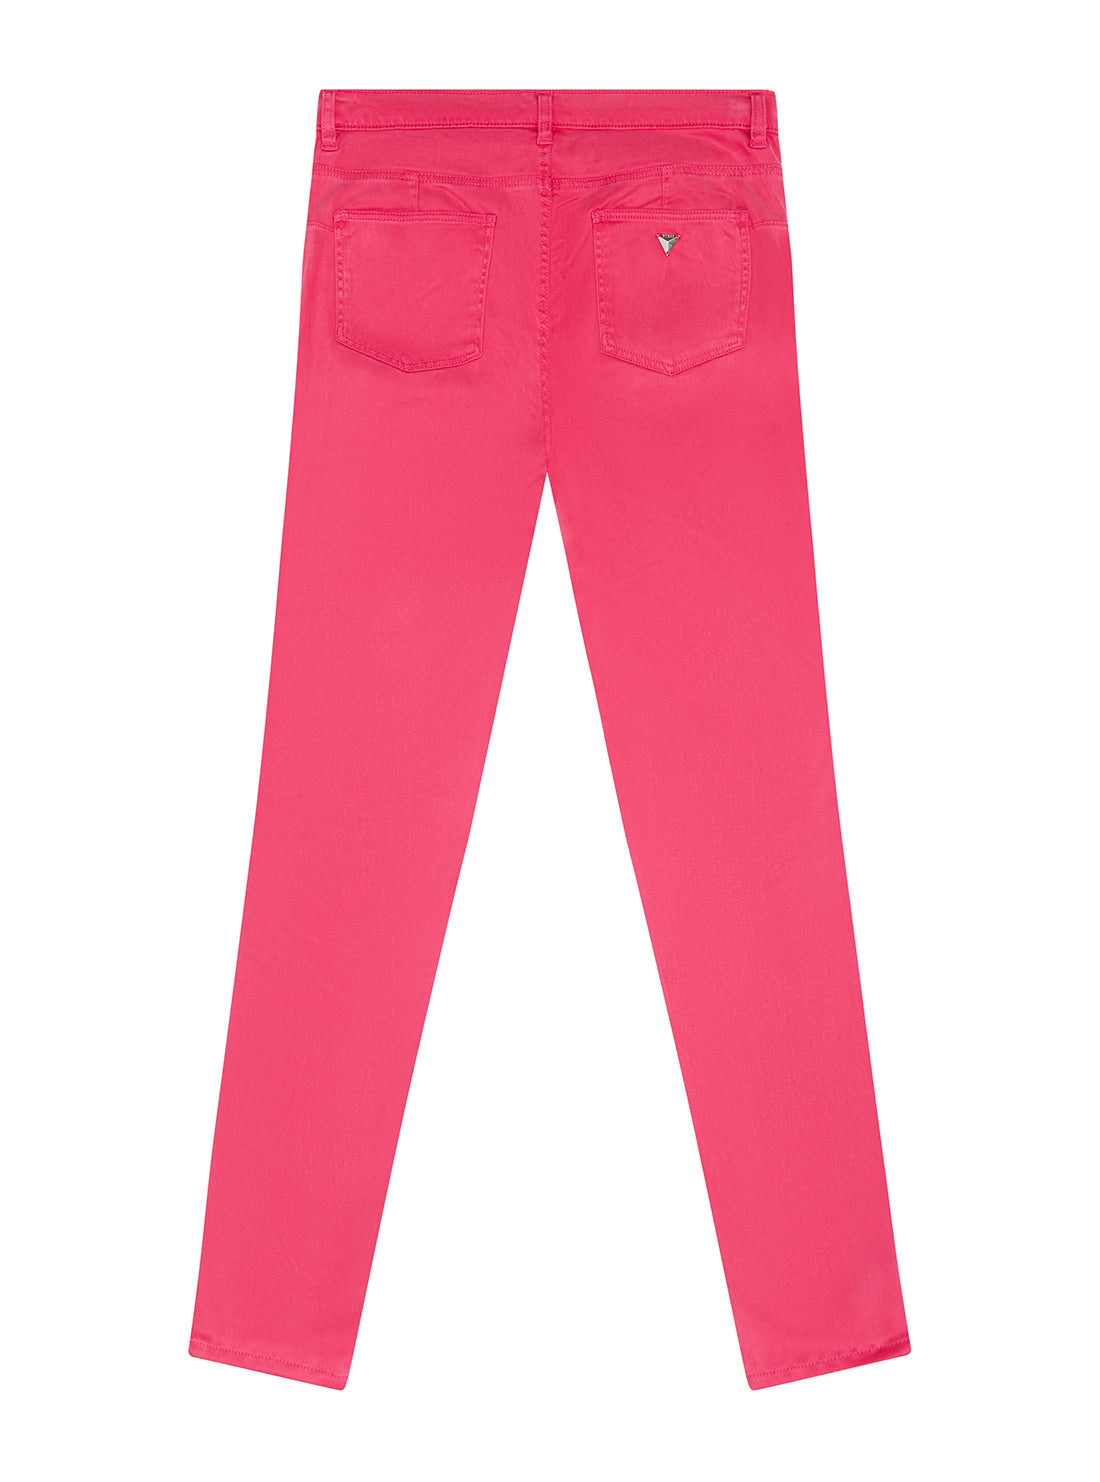 GUESS Big Girls Souvenir Pink Stretch Pants (7-16) J1YB05WB7X0 Back View